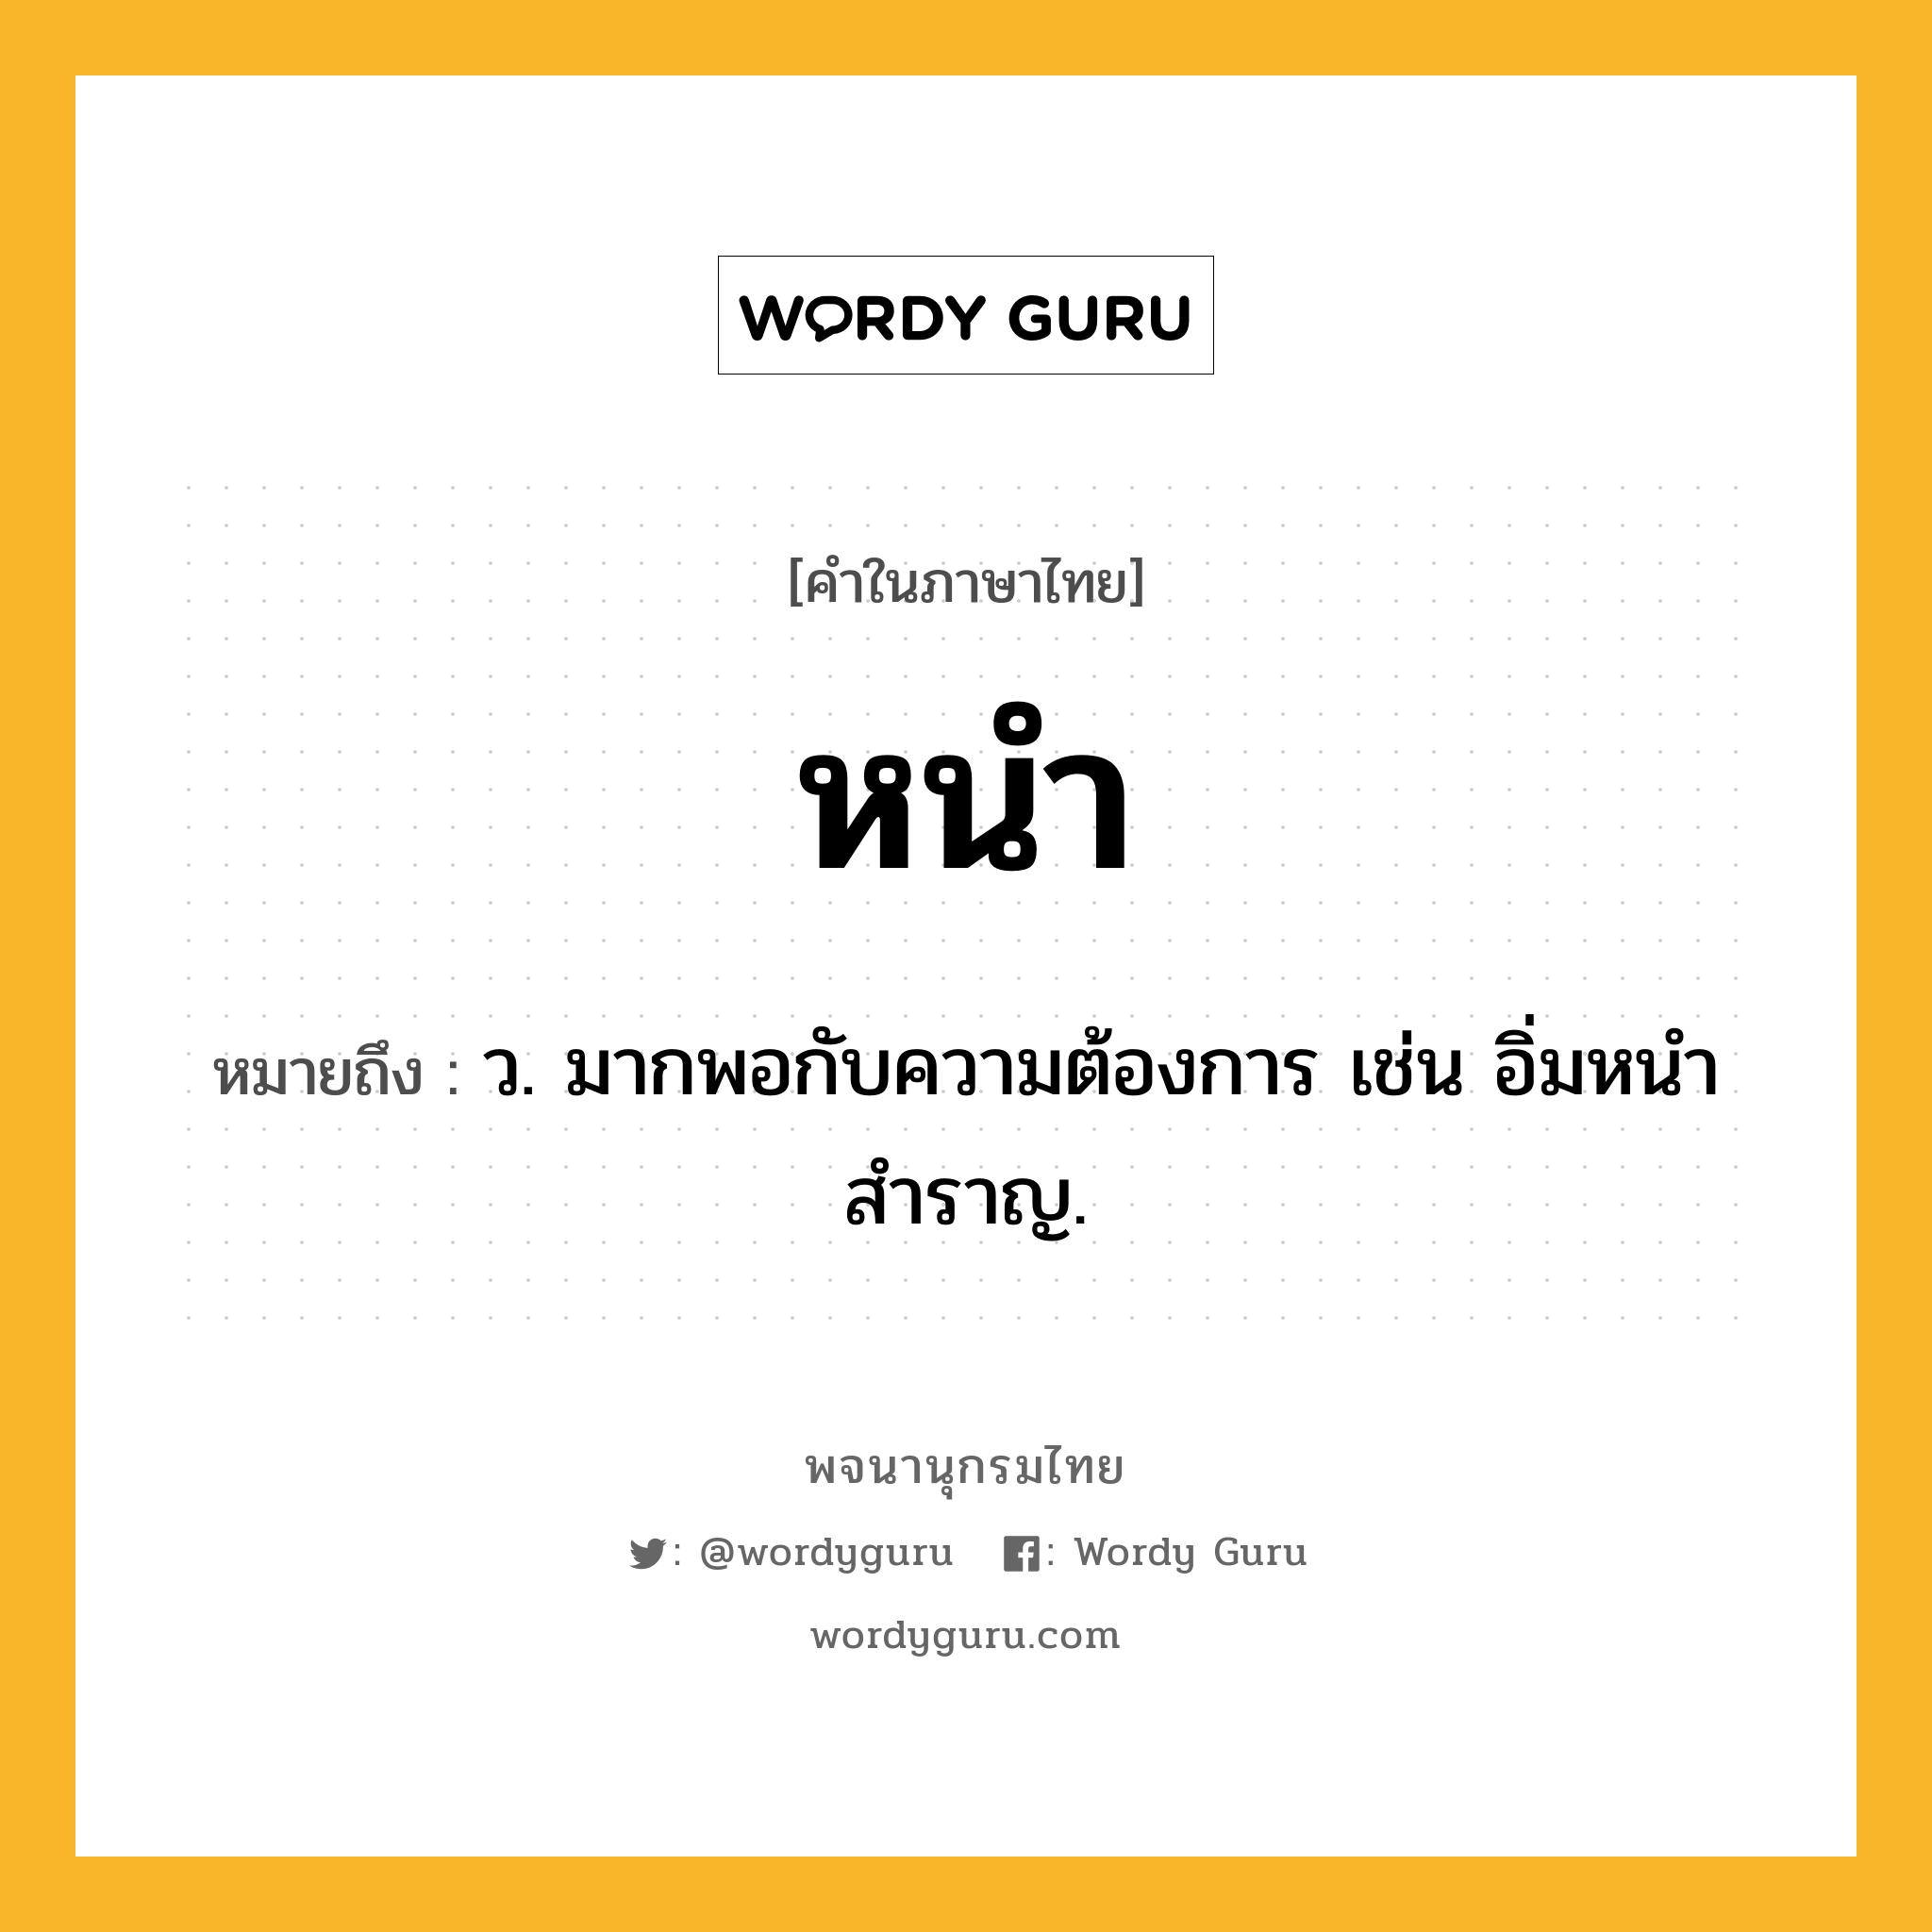 หนำ ความหมาย หมายถึงอะไร?, คำในภาษาไทย หนำ หมายถึง ว. มากพอกับความต้องการ เช่น อิ่มหนำสำราญ.